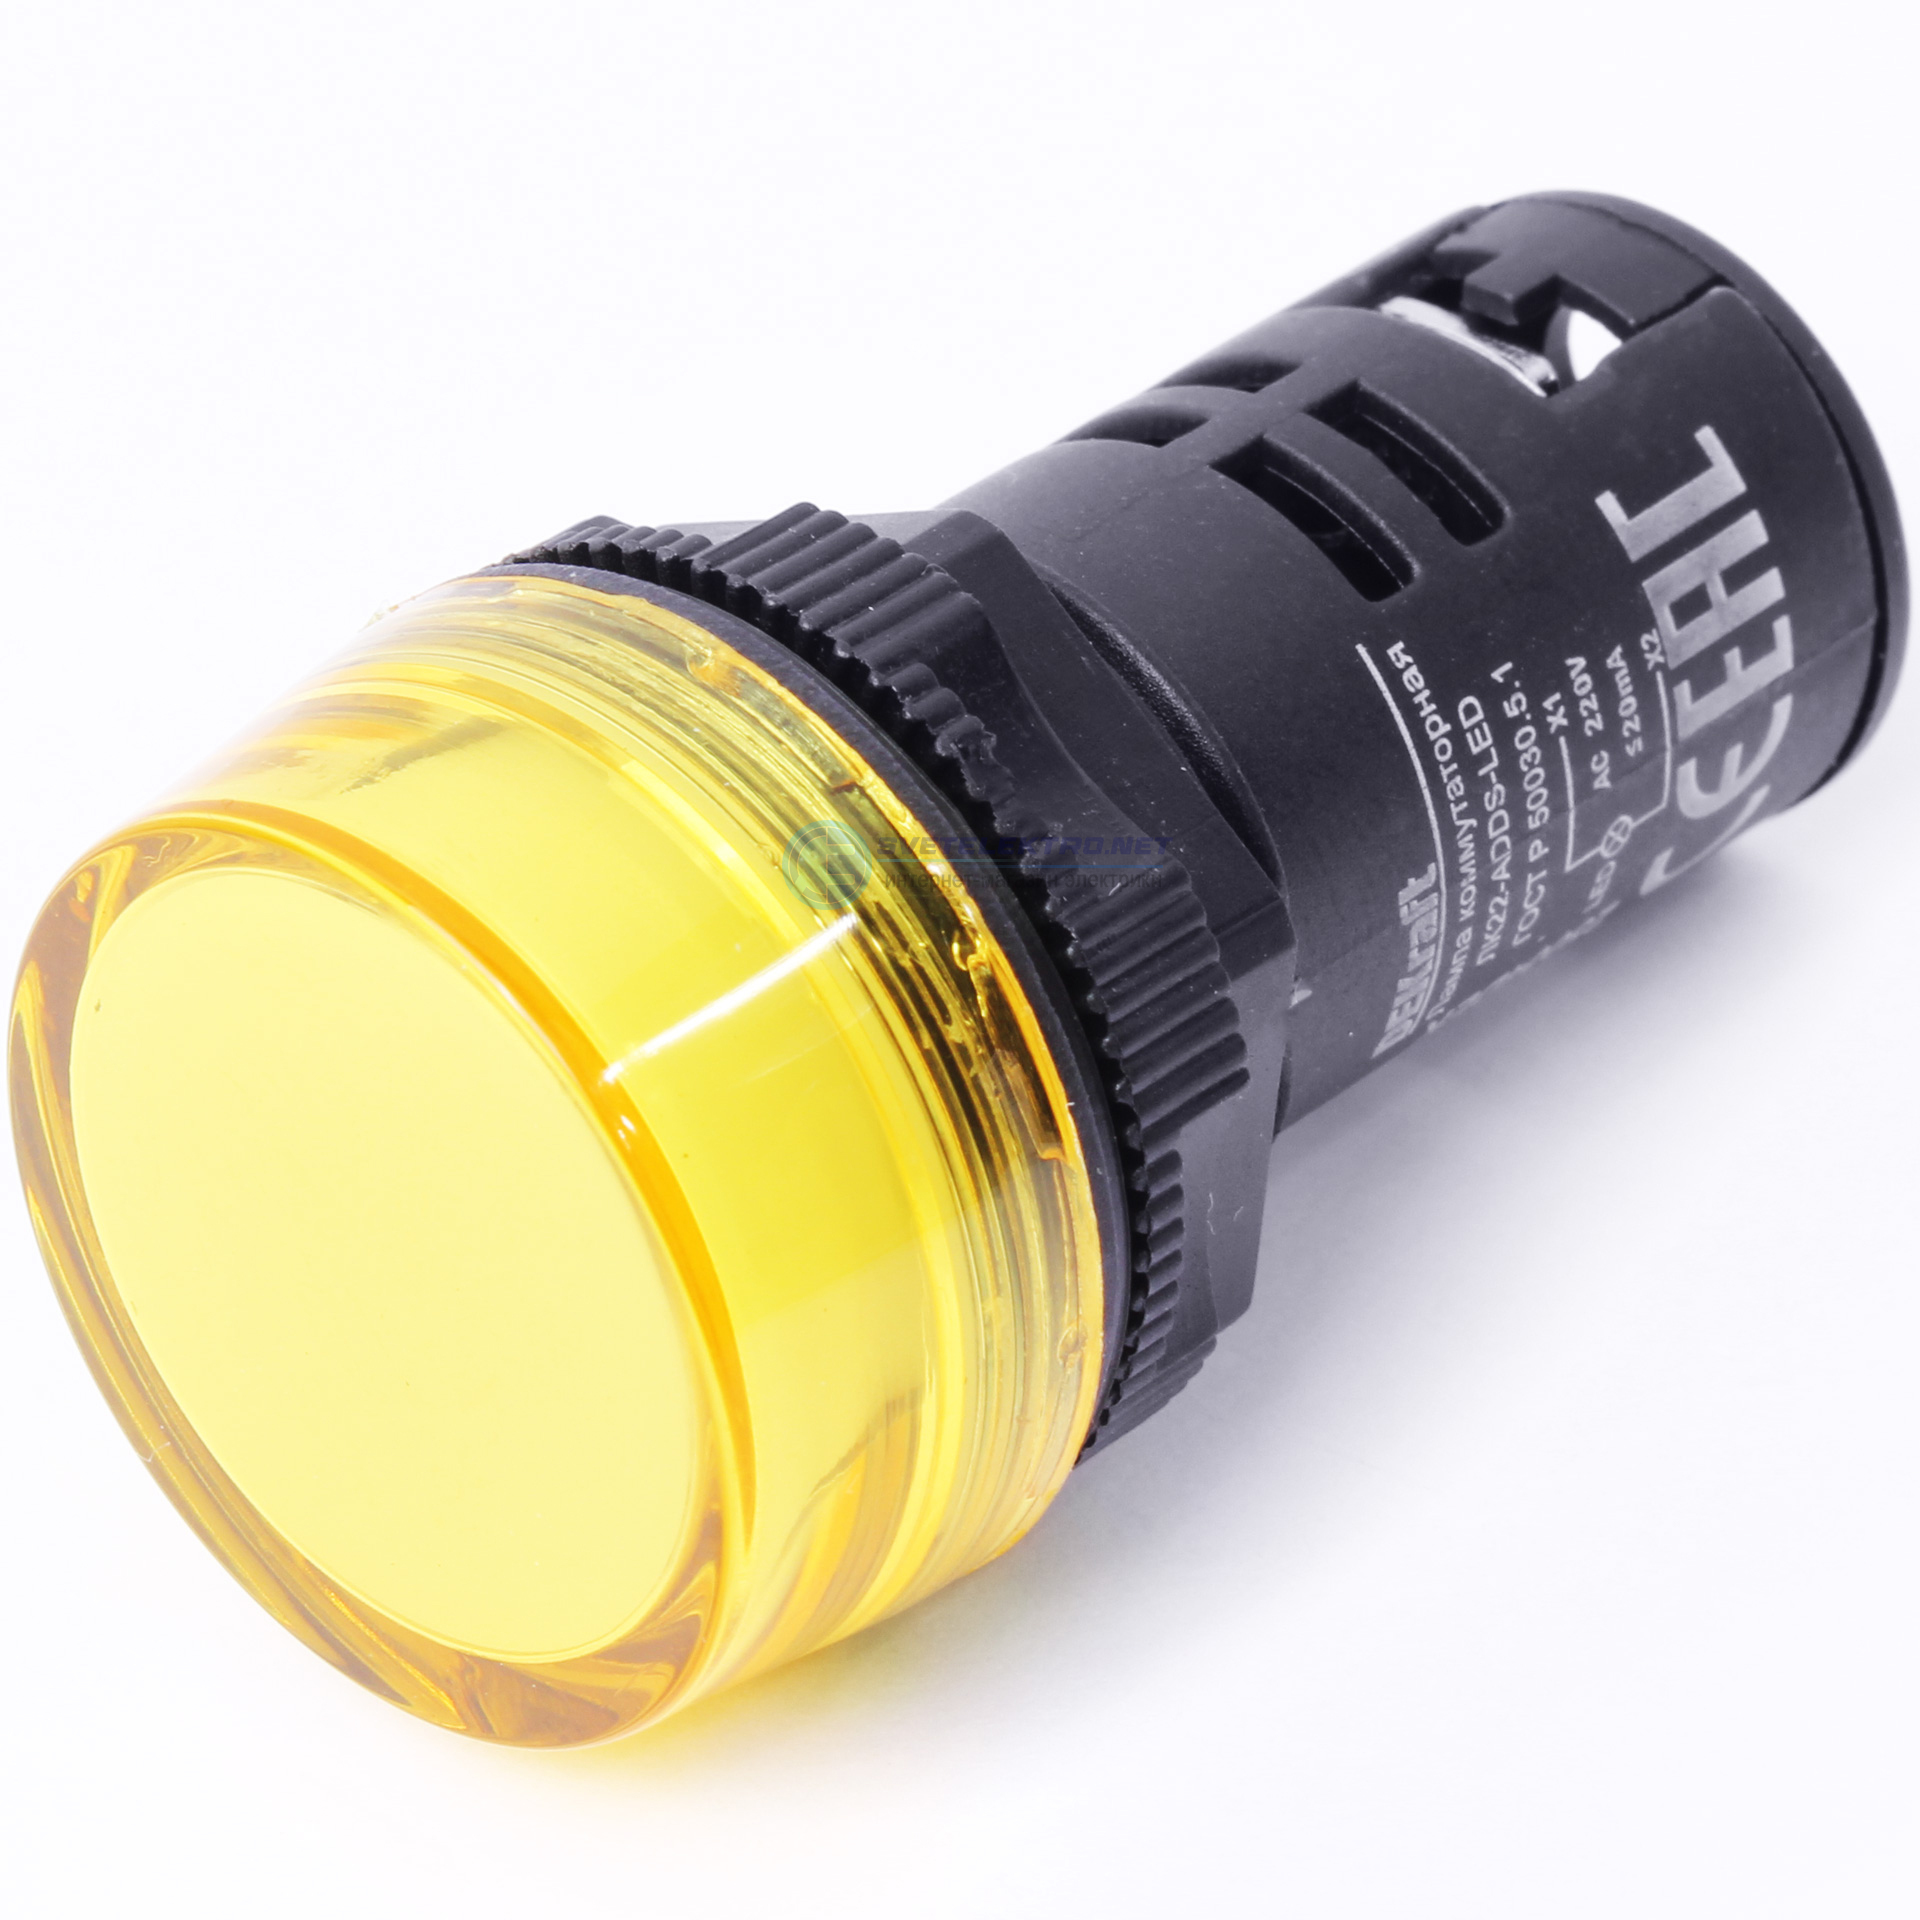 Adds 22. Лампа сигнальная xb7-EVO MP 230в, 22мм. Жёлтая. Лампа adds 22мм желтая led 220в. Сигнальная лампа sb7 моноблочная 22мм желтая led 24в DC. Сигнальная лампа DEKRAFT лс101.